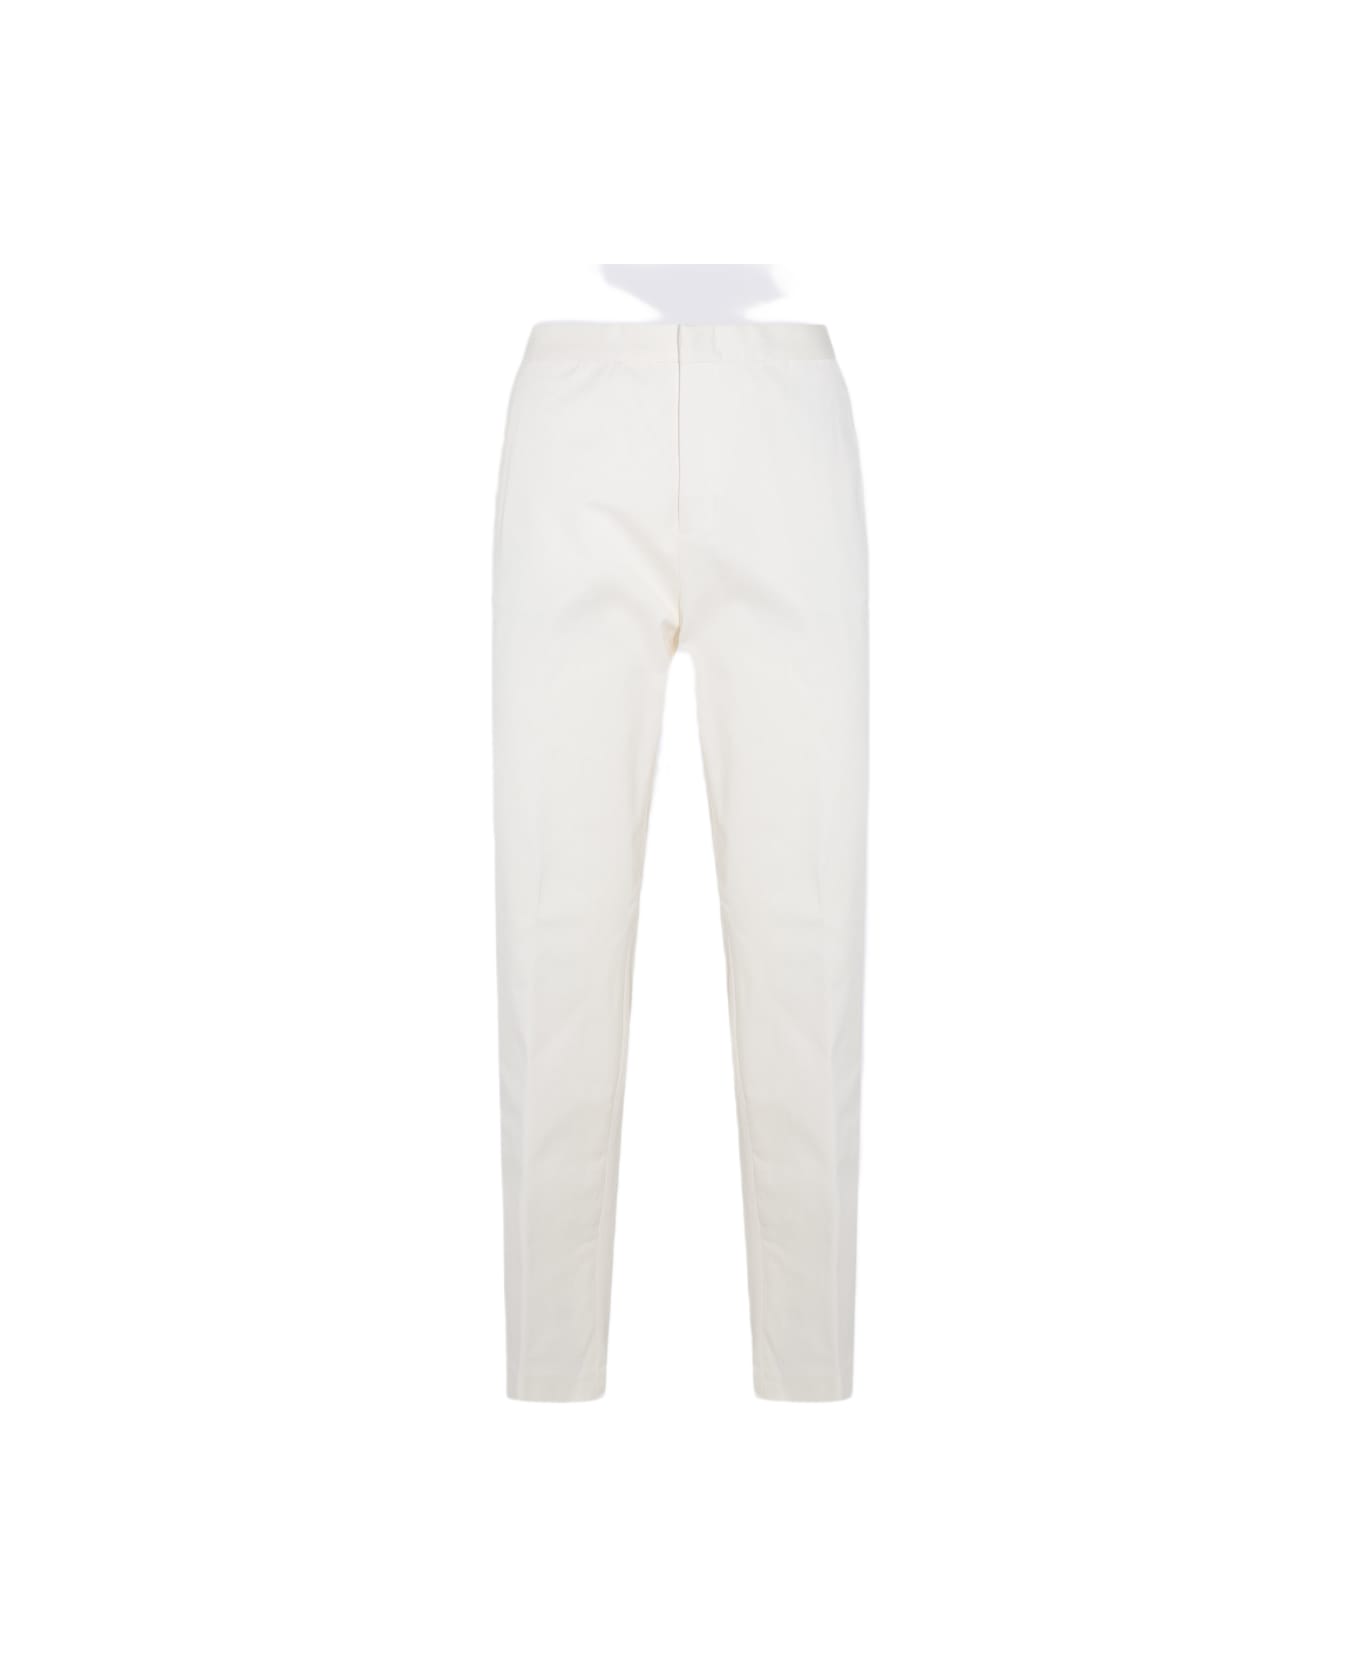 Fabiana Filippi White Cotton Pants - White